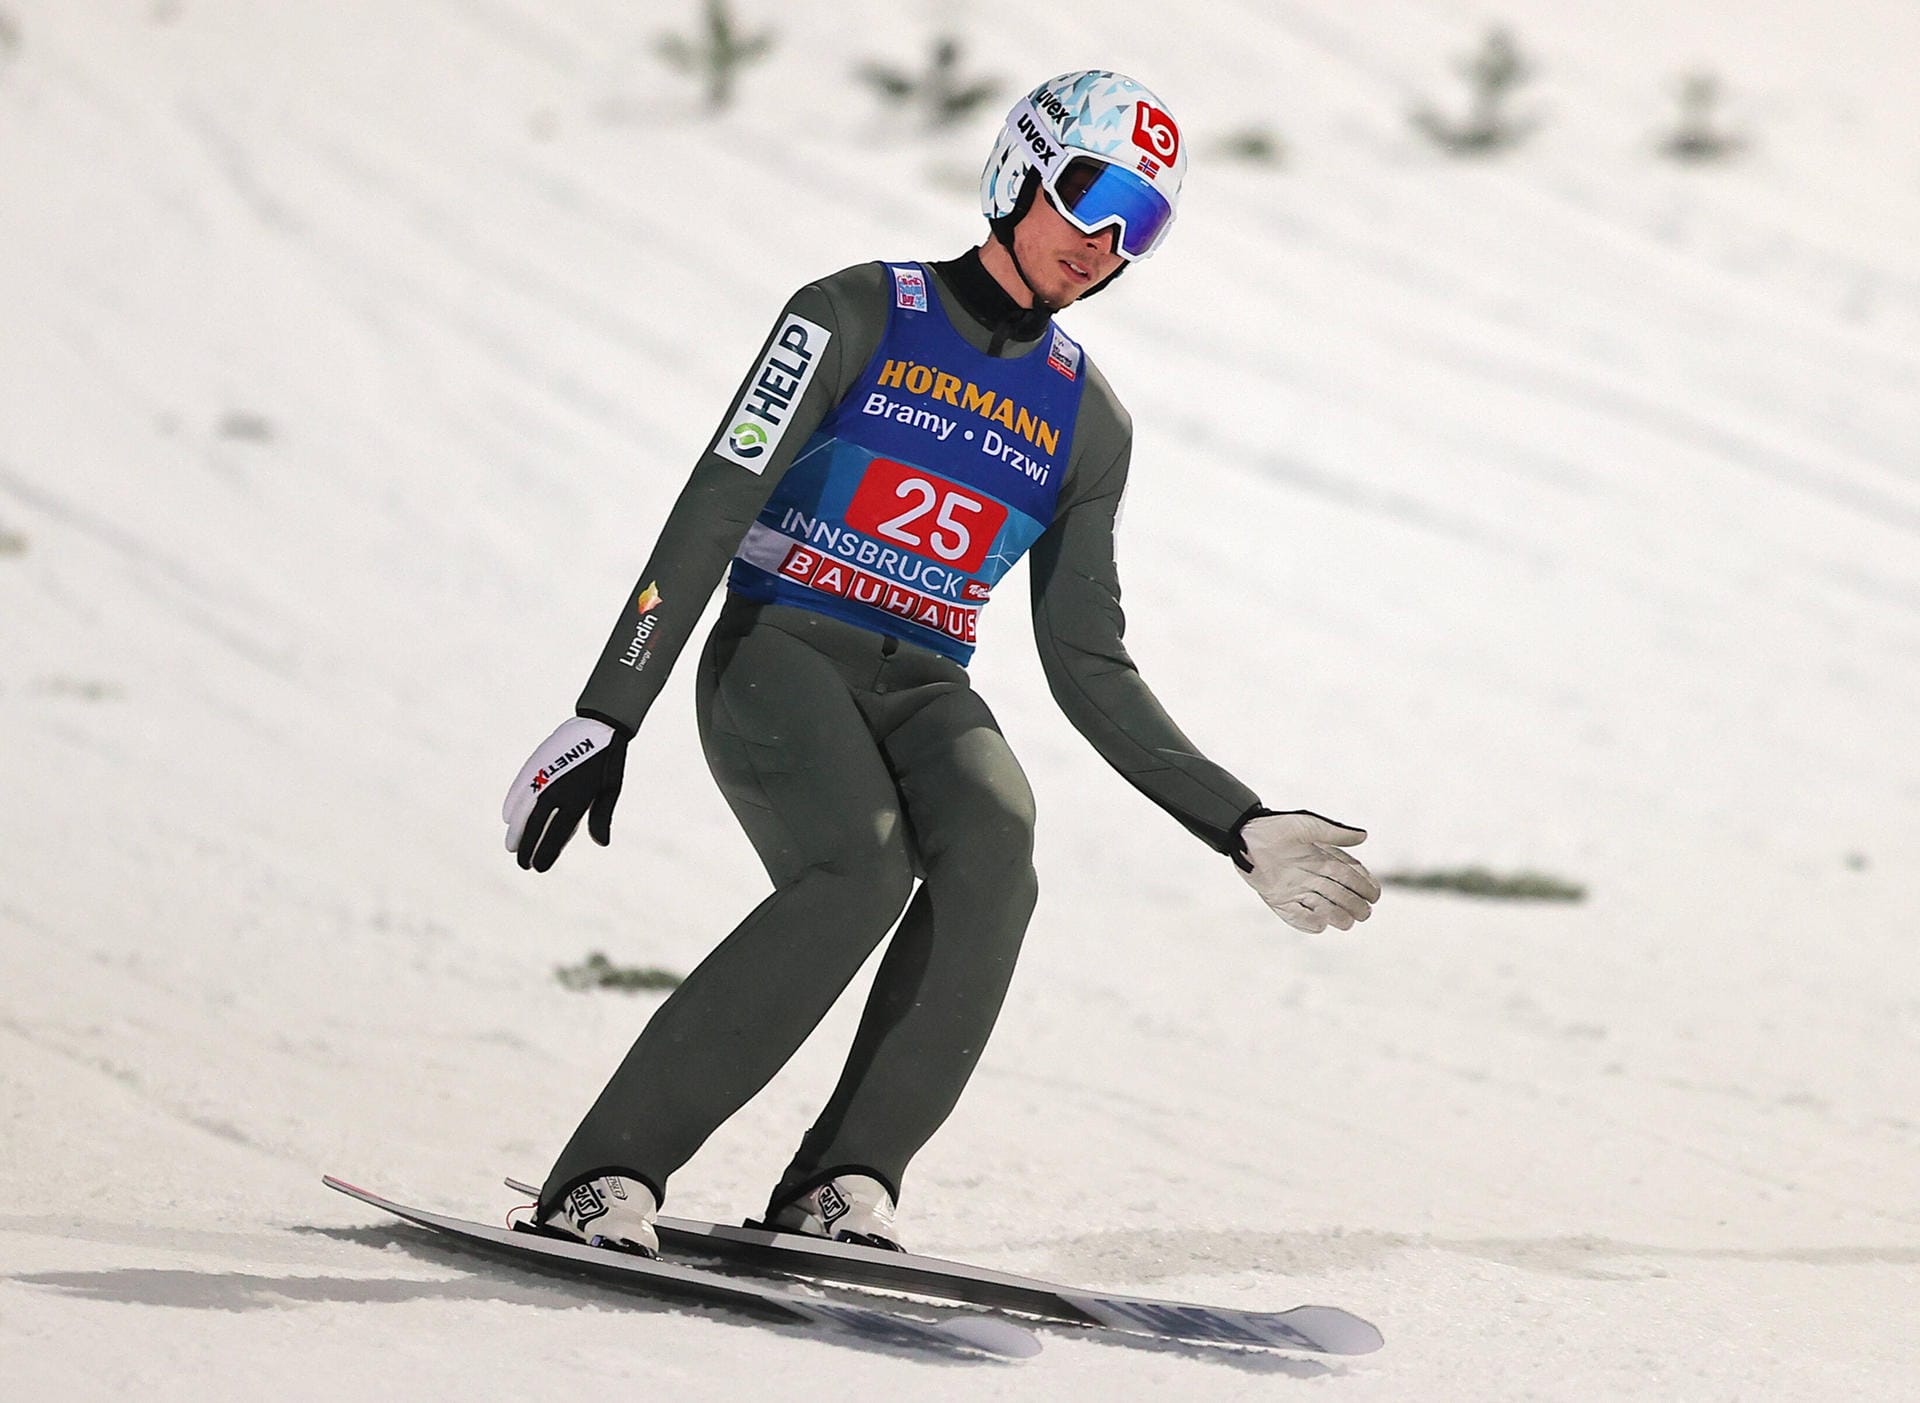 Johann André Forfang: Auch für den norwegischen Silbermedaillengewinner von Pyeongchang kommen die Spiele in Peking zu früh. Seine CT-Werte sind nach einer Corona-Infektion zu hoch. Er wird bei den Skisprung-Wettkämpfen nicht dabei sein.